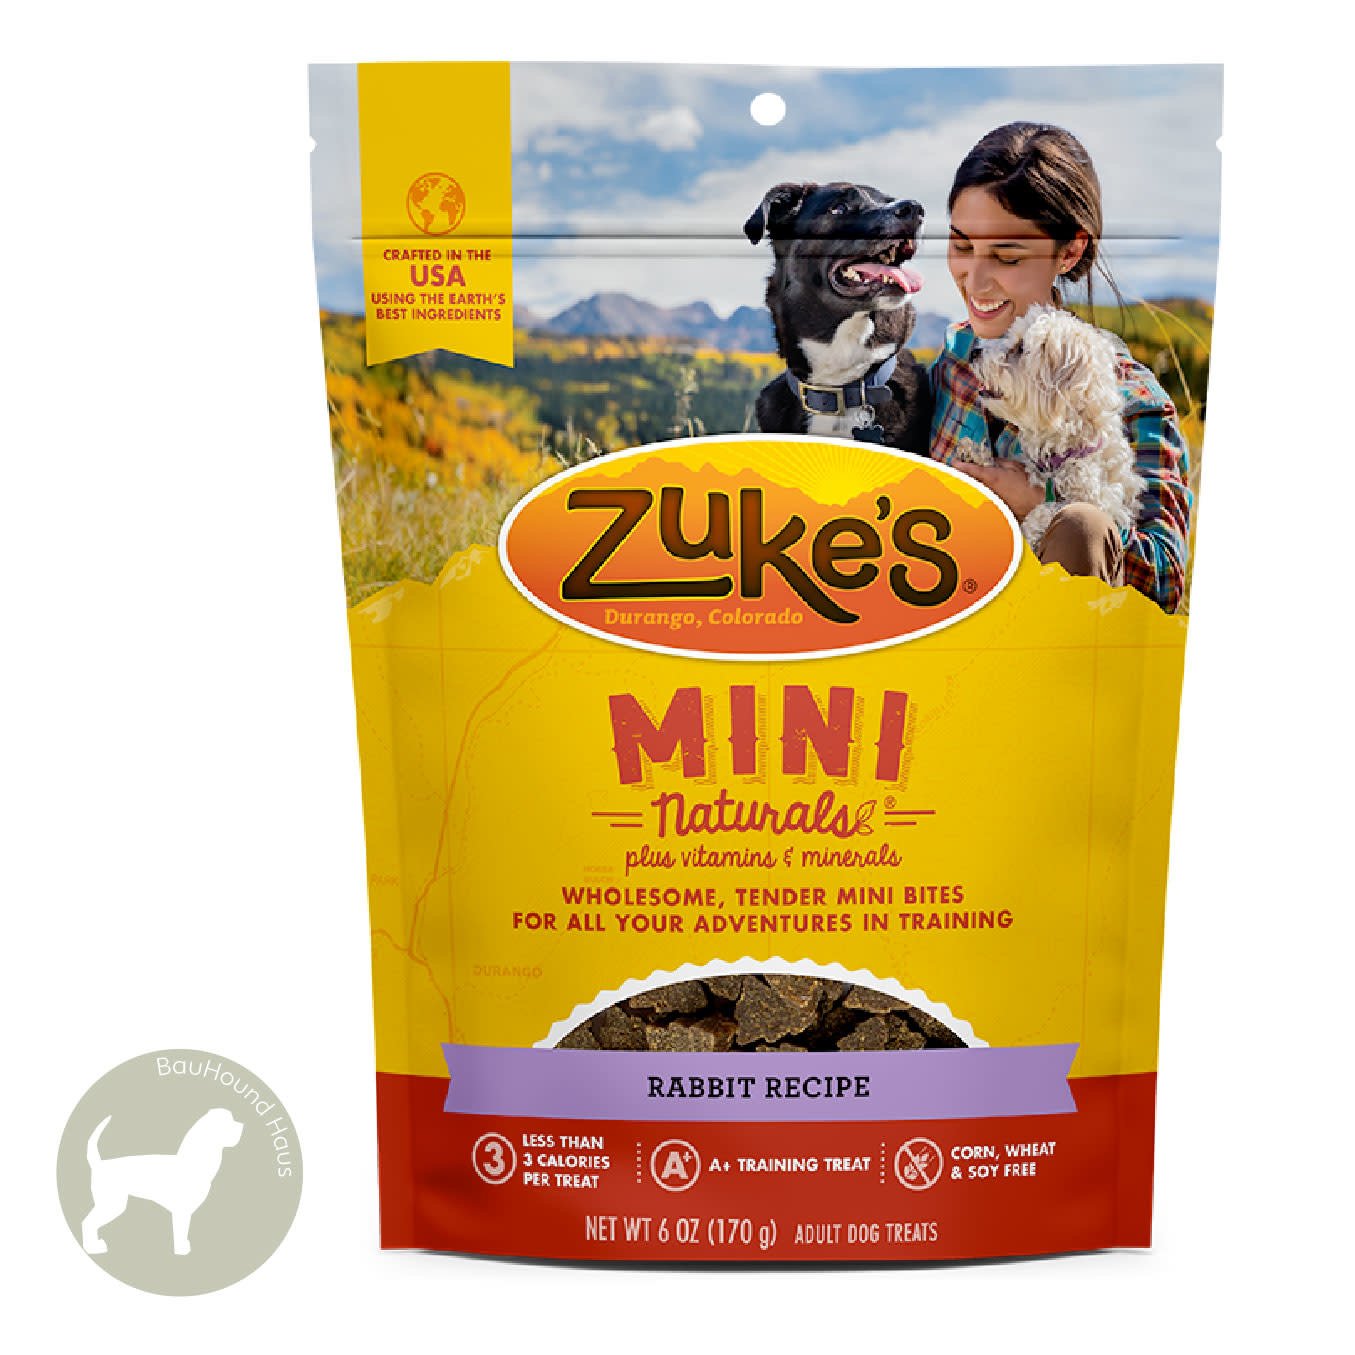 Zukes Zukes Mini Naturals Rabbit Treats, 6oz